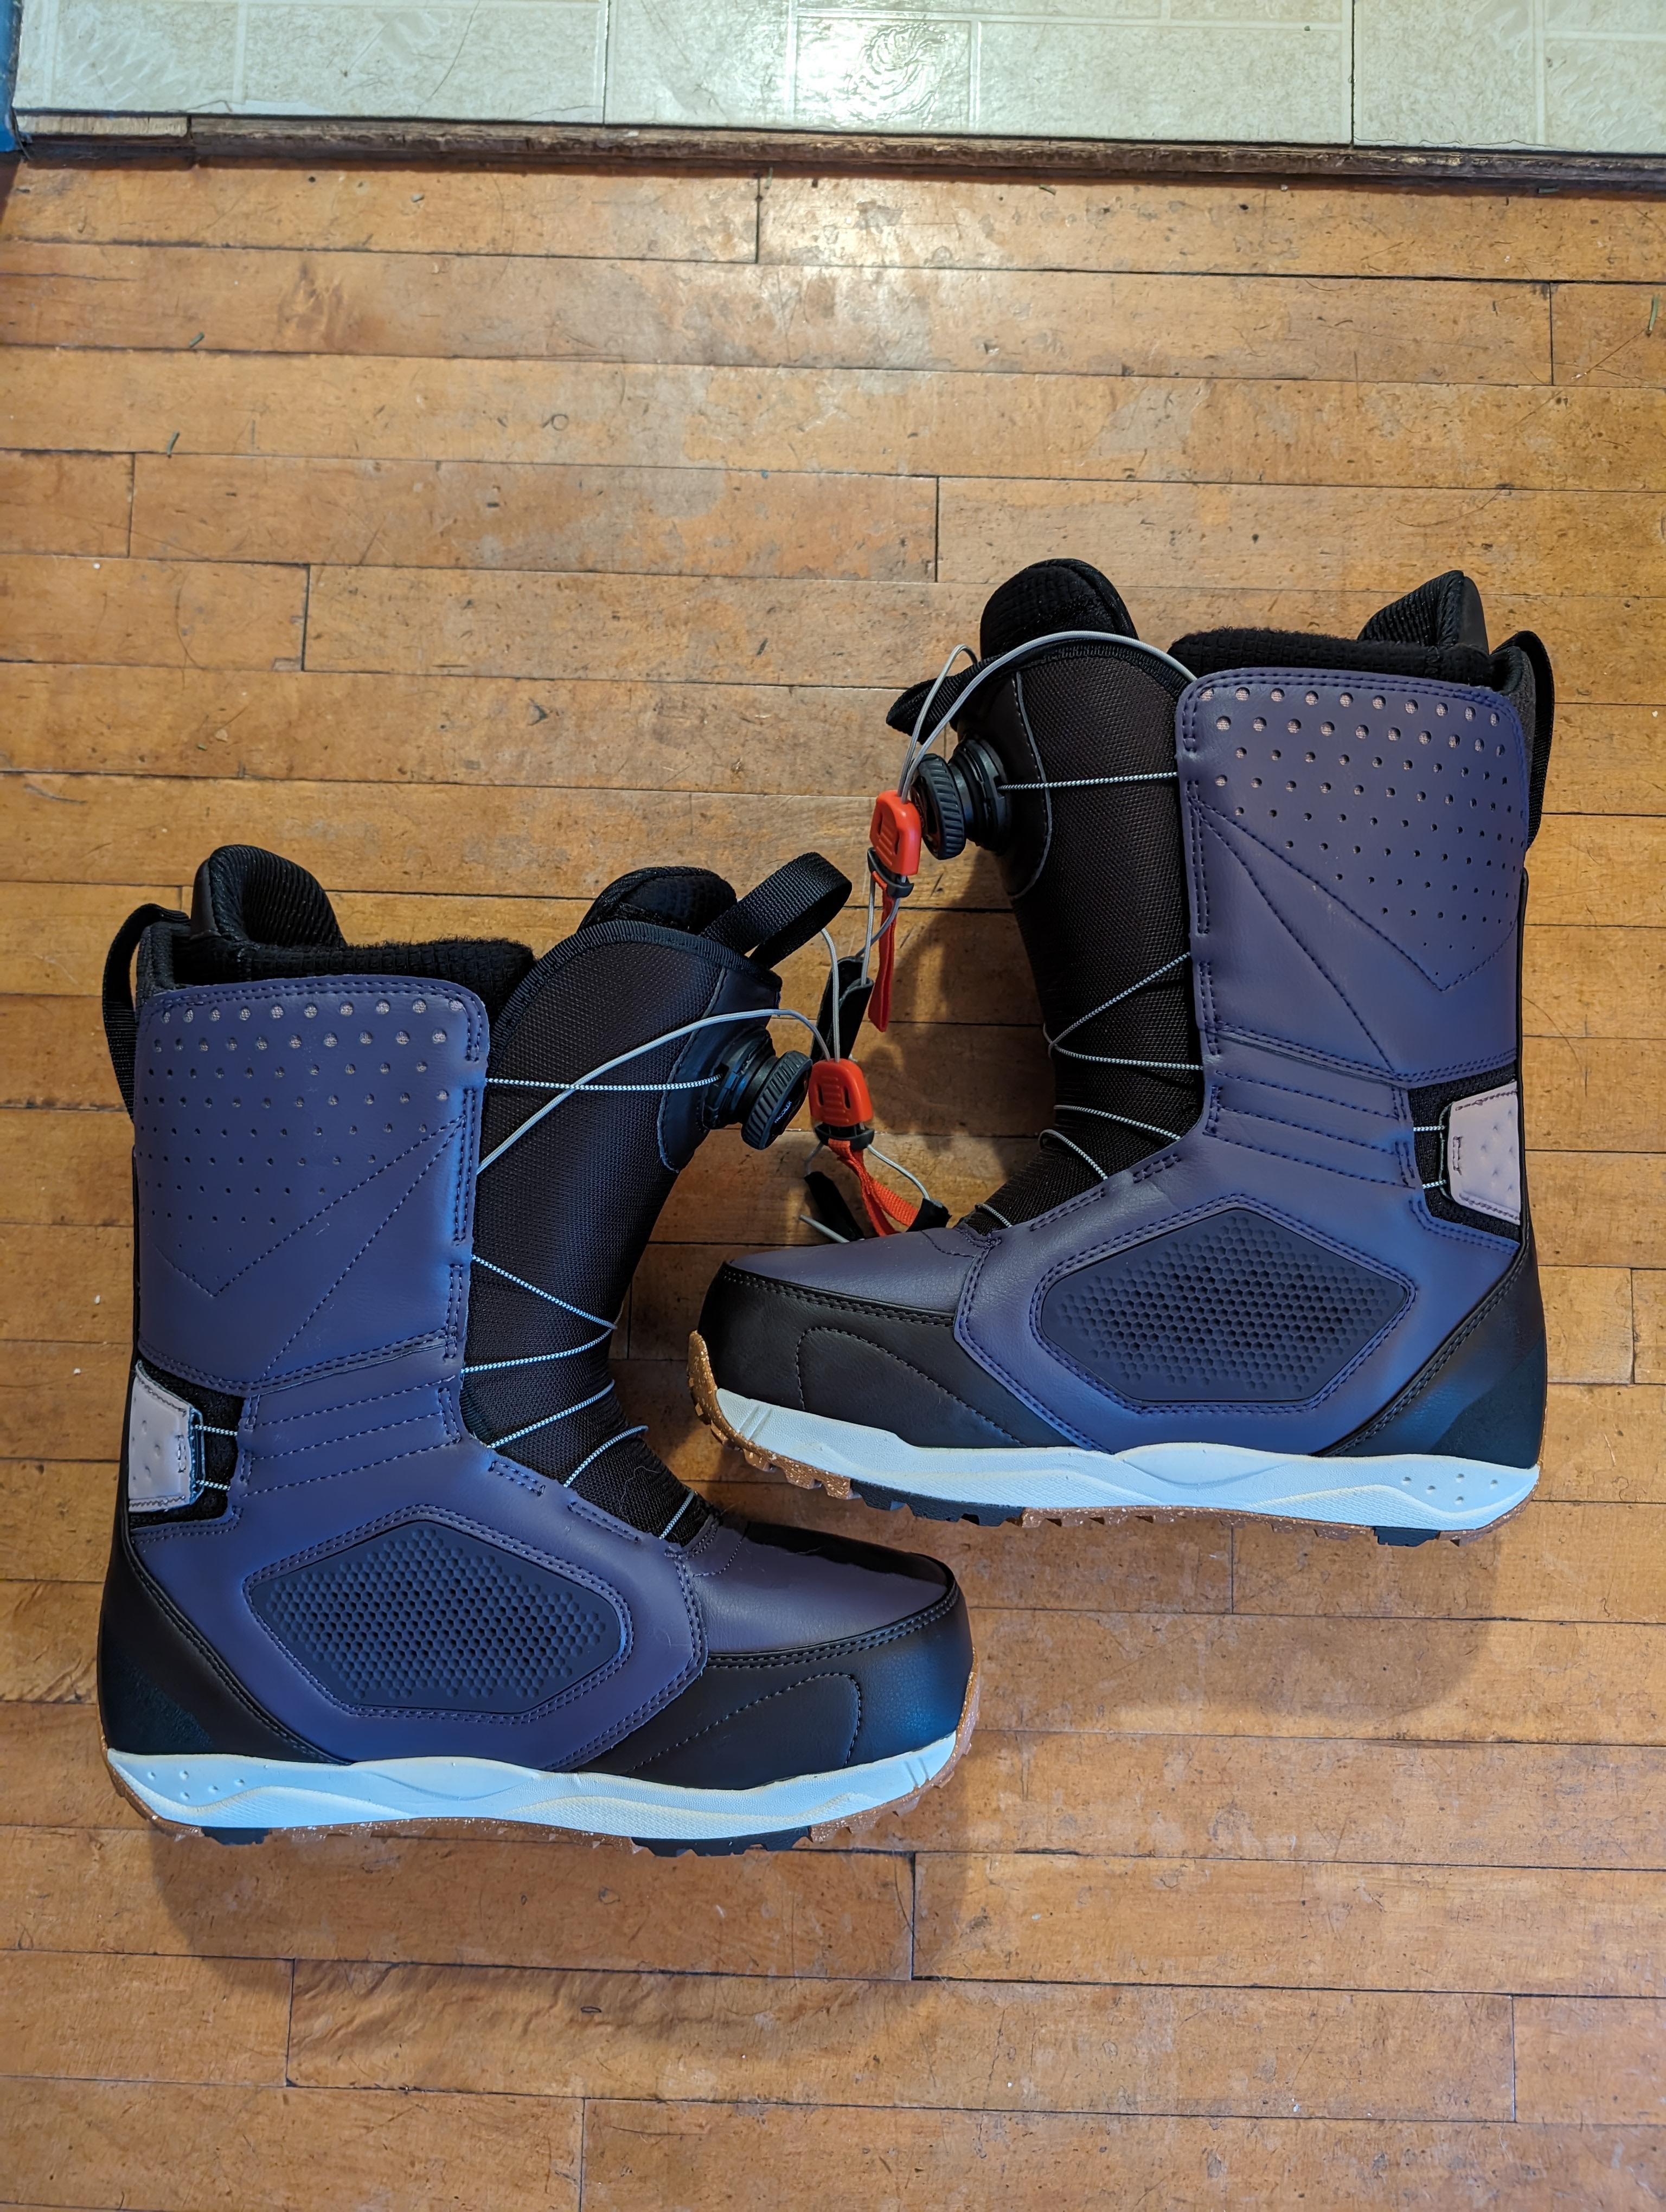 Burton Photon Boa Snowboard Boots - Size 9